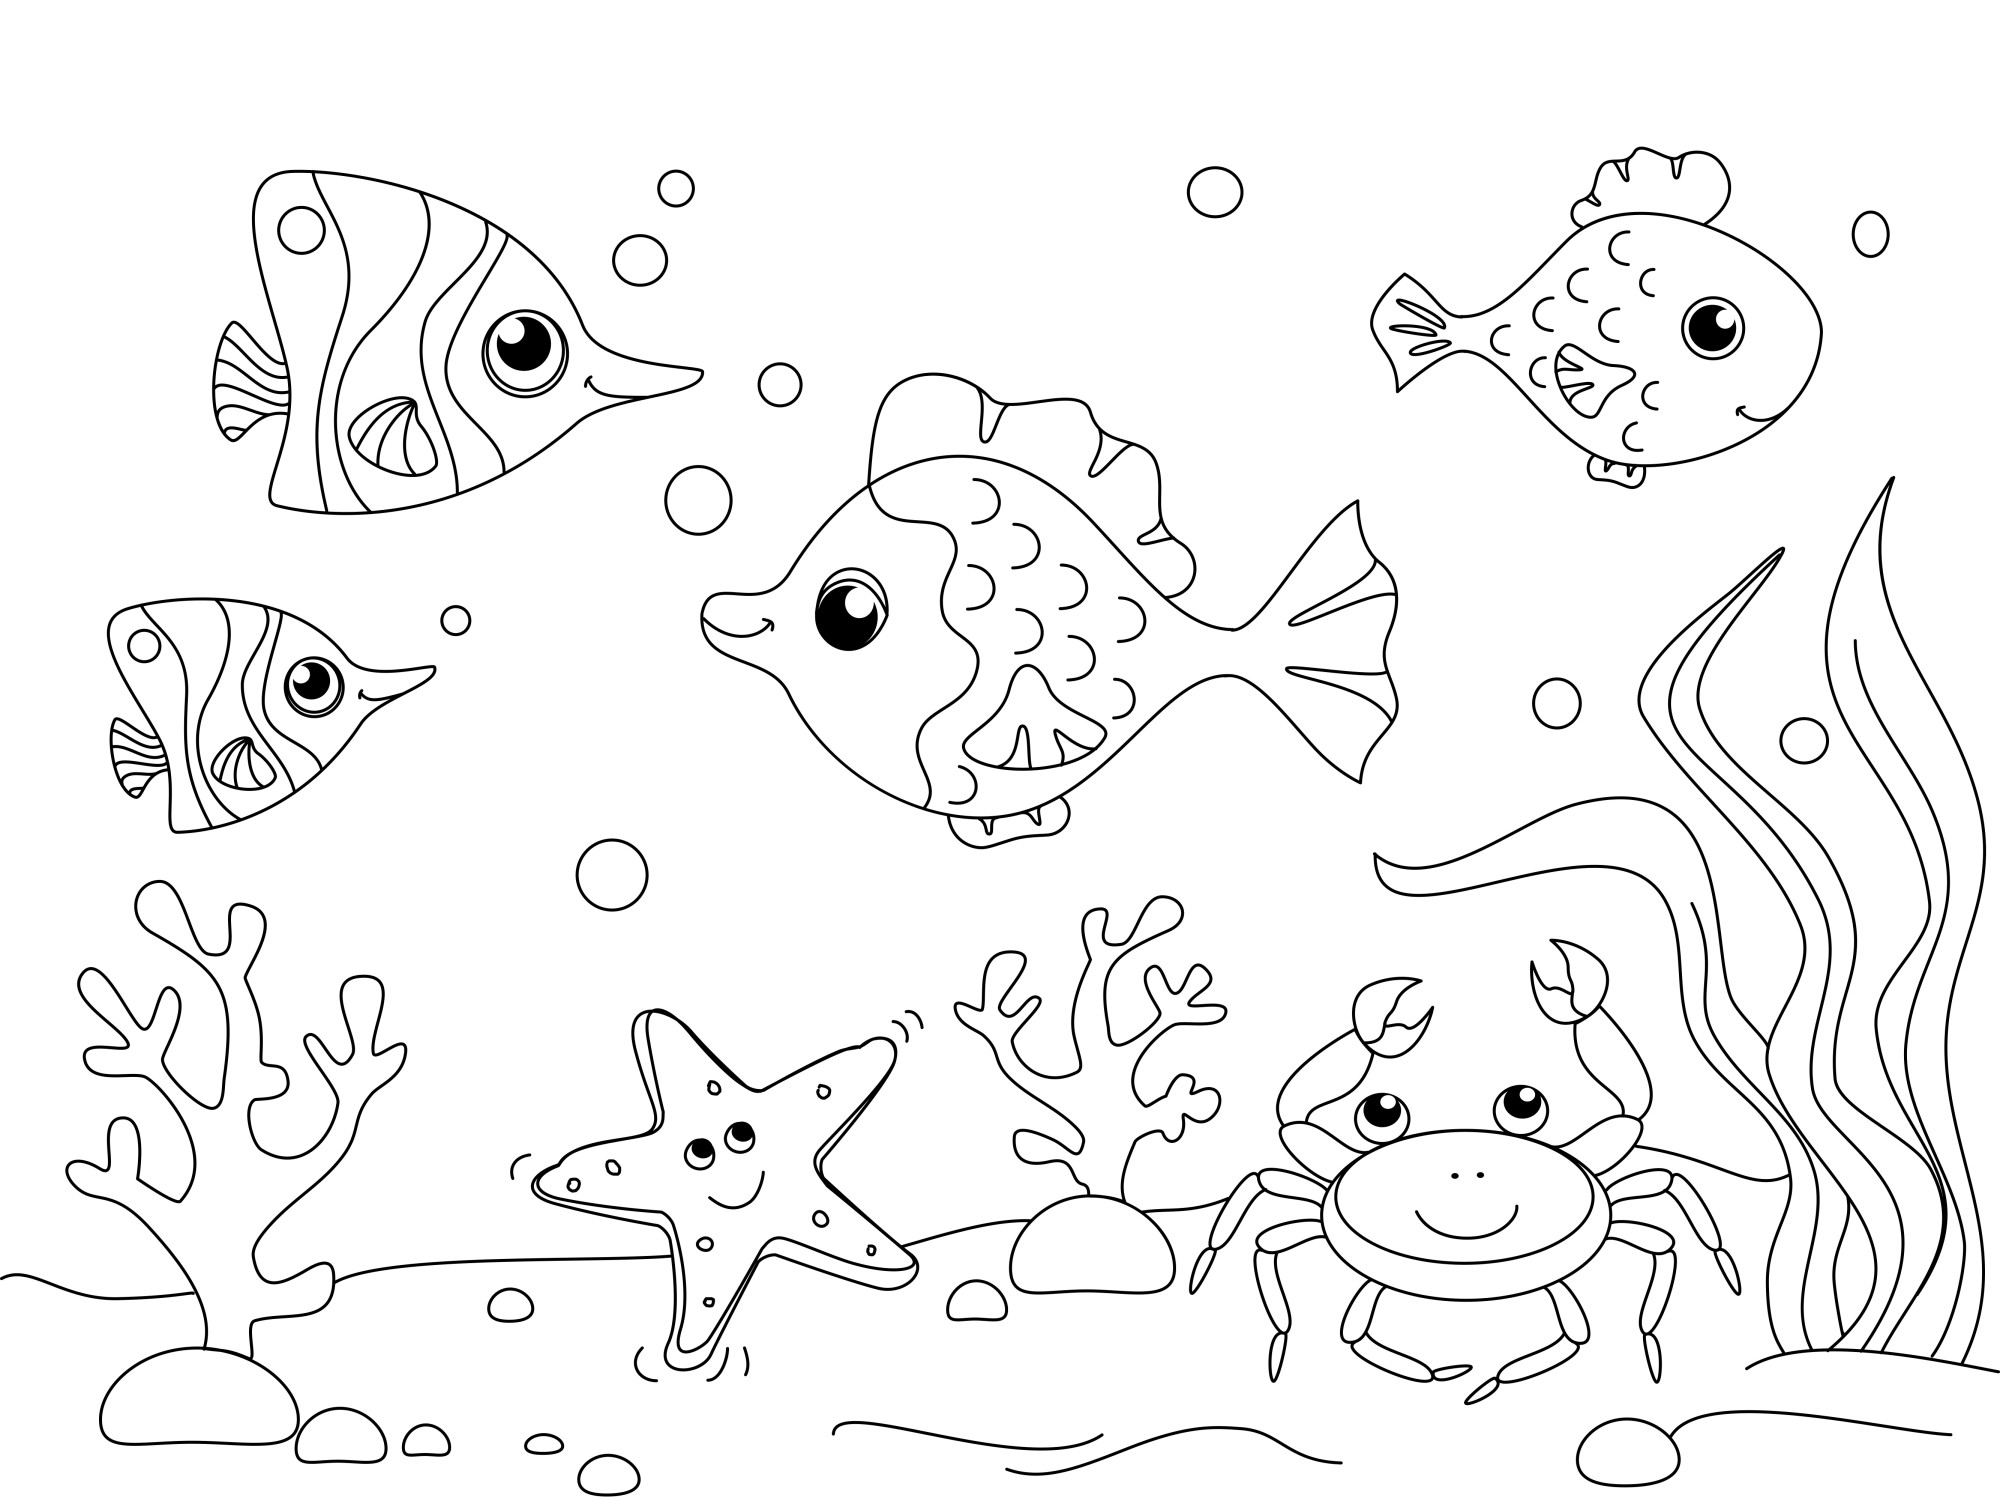 Раскраска для детей: подводный мир дно океана с морскими жителями рыбками